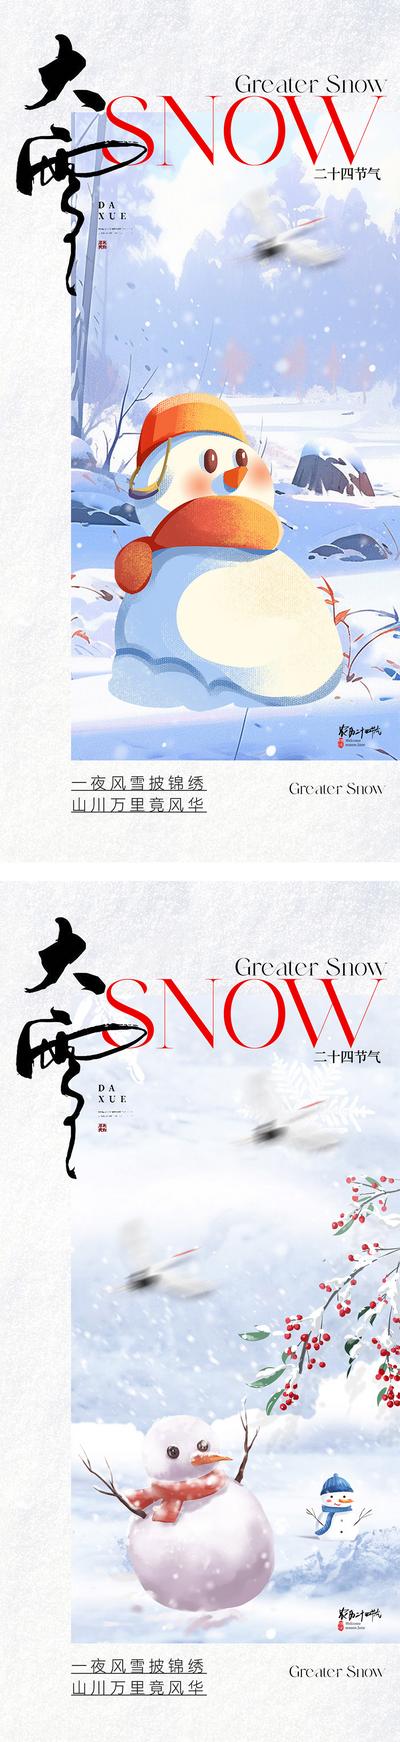 南门网 广告 海报 插画 大雪 二十四节气 小雪 冬天 雪人 立冬 冬至 雪花 下雪 冬季 简约 雪地